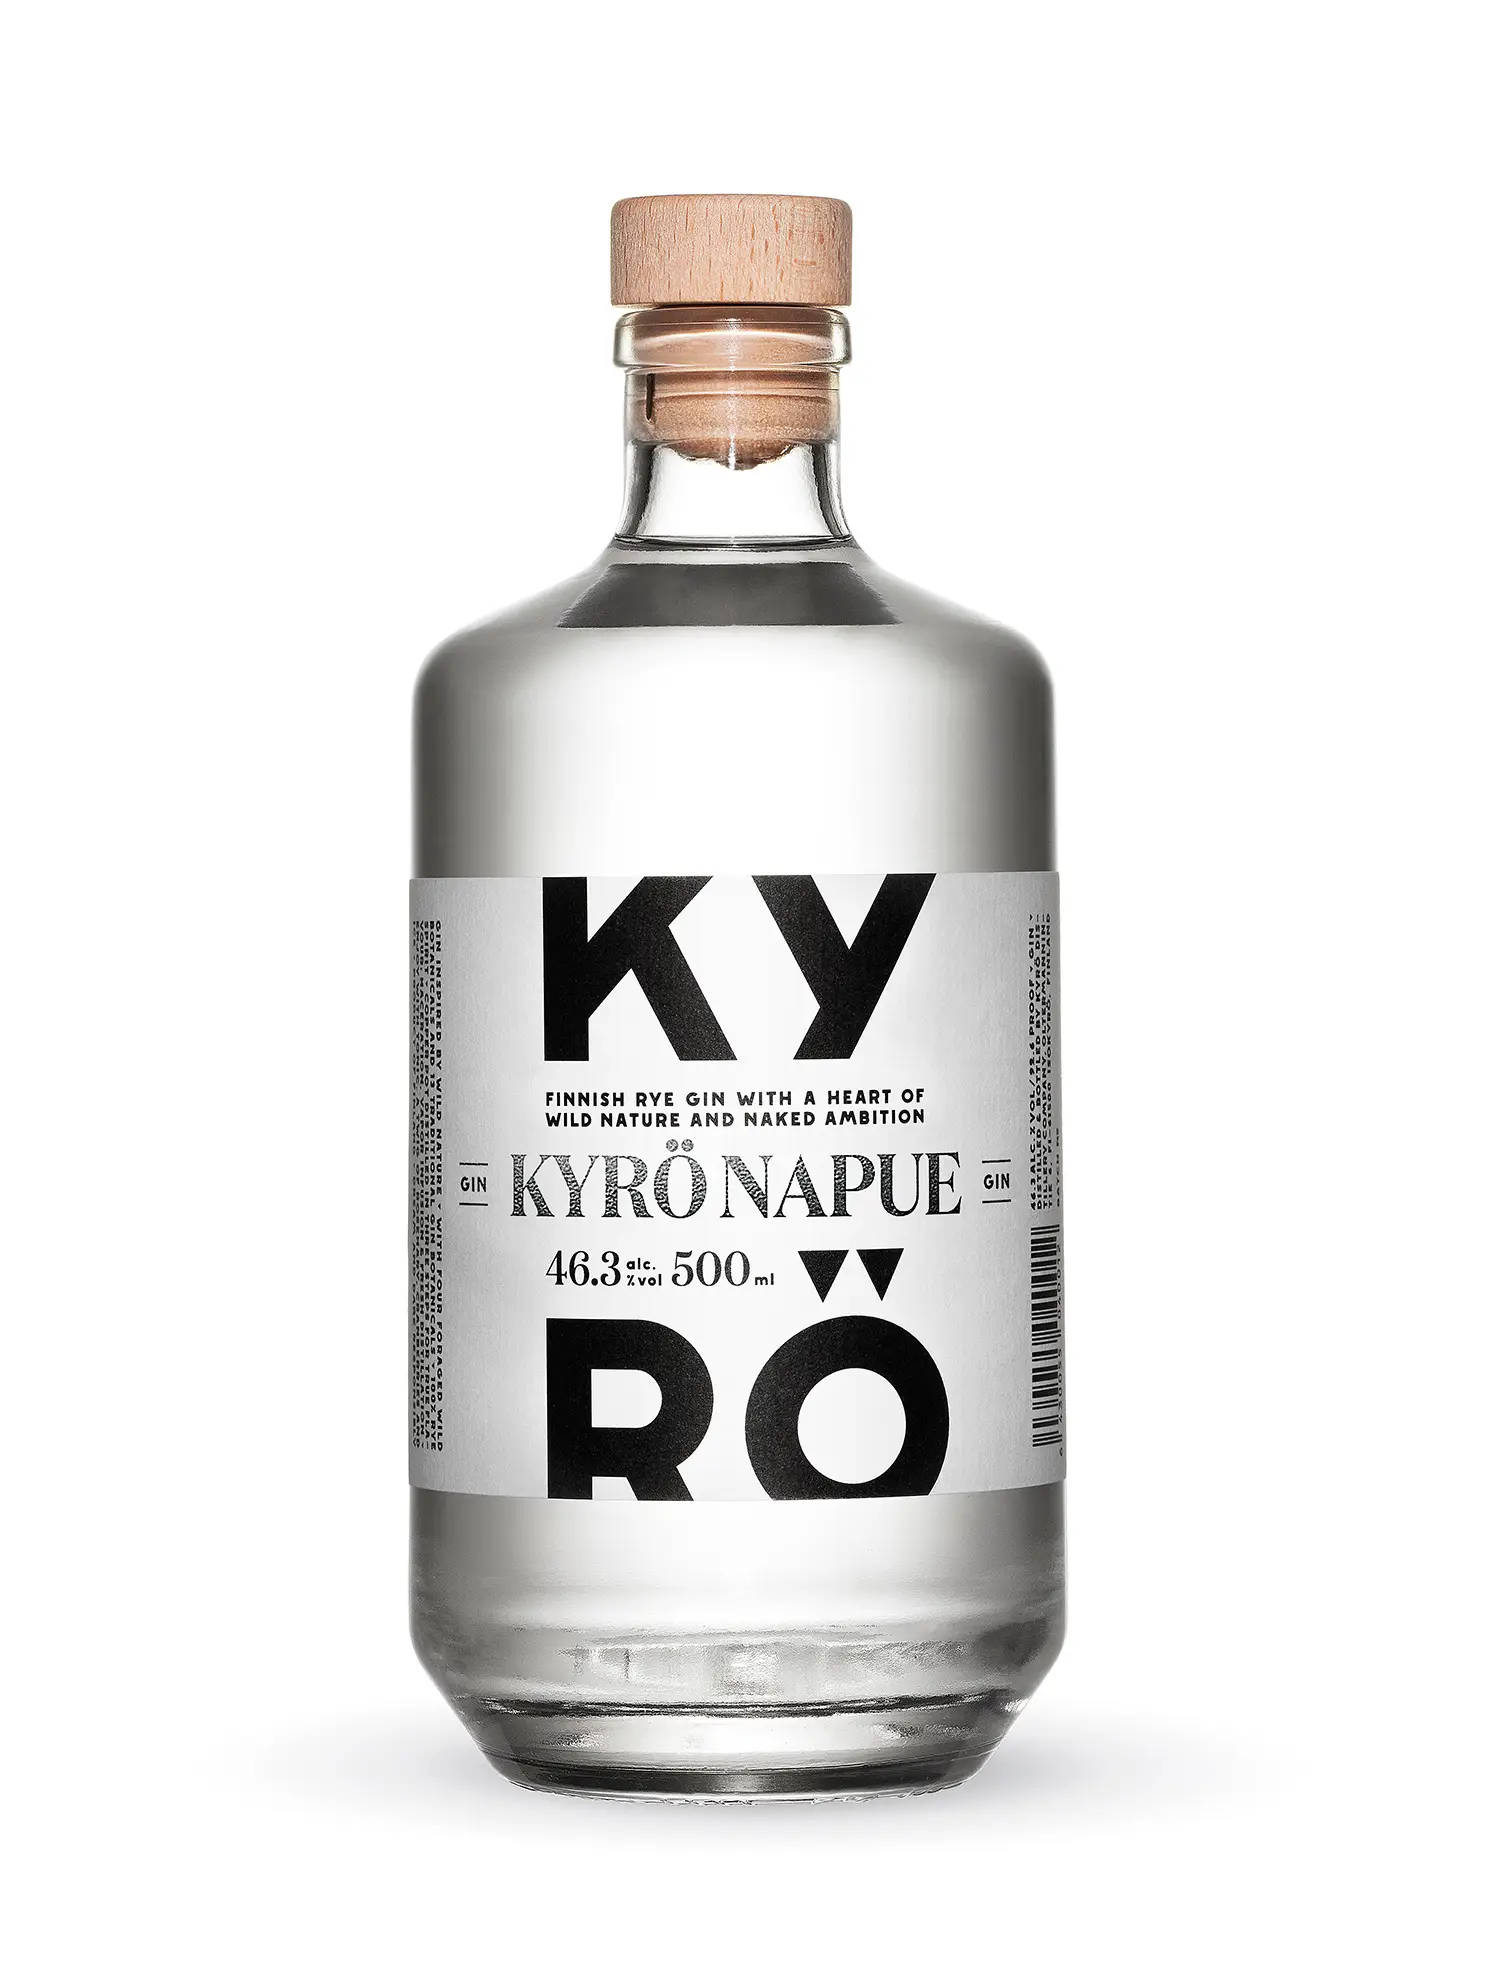 Kyro Napue Gin NV